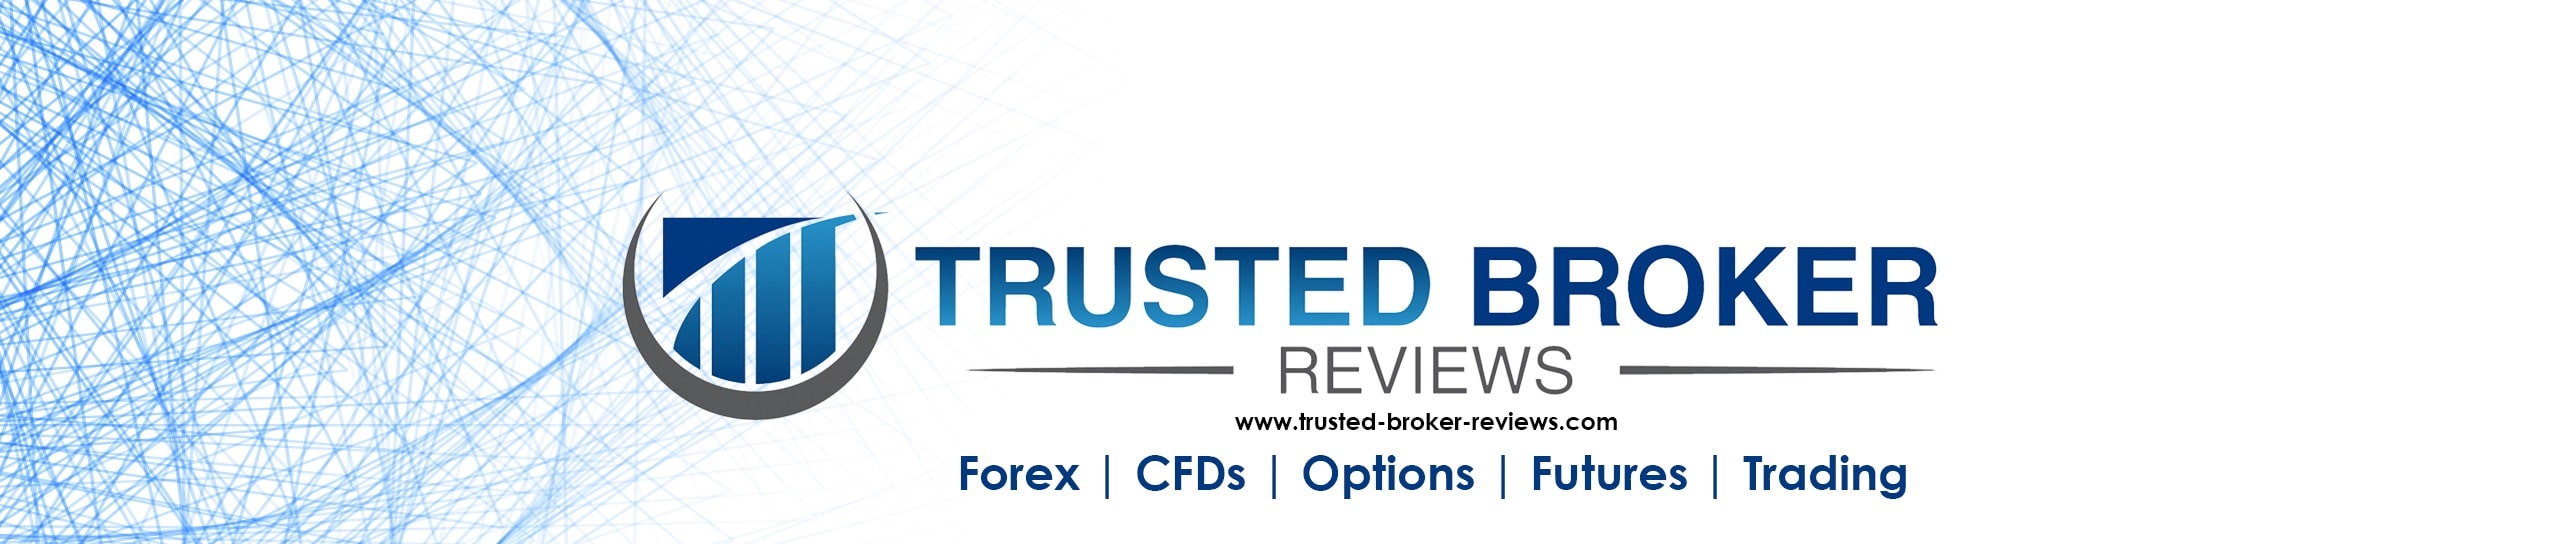 Trusted Broker Reviews Giới thiệu về chúng tôi Logo